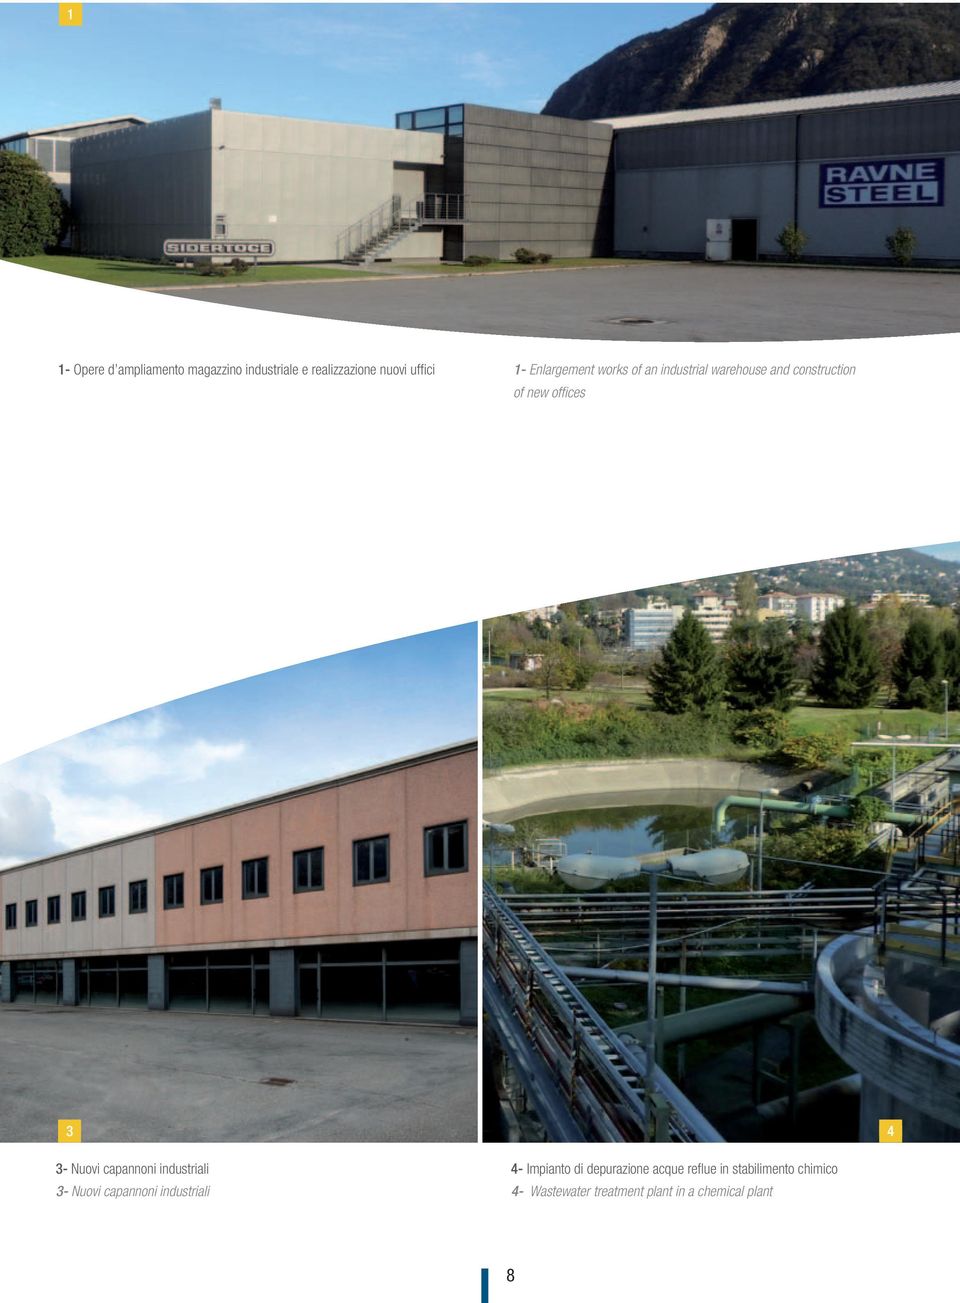 Nuovi capannoni industriali 3- Nuovi capannoni industriali 4- Impianto di